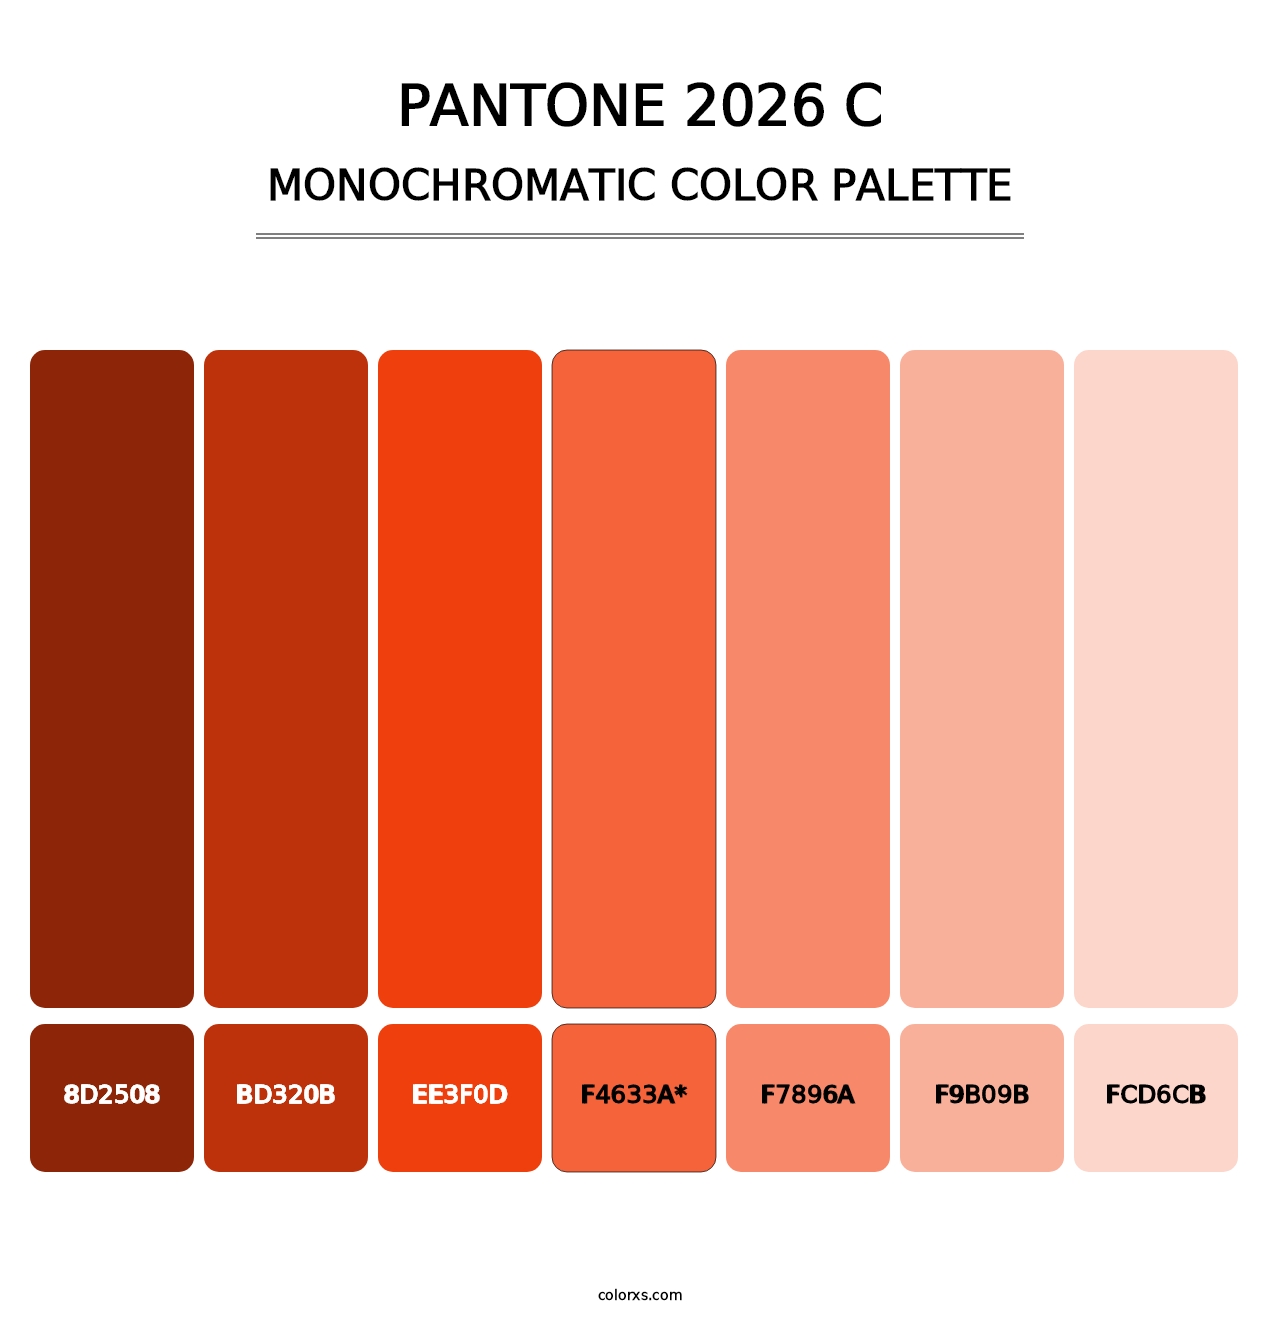 PANTONE 2026 C - Monochromatic Color Palette